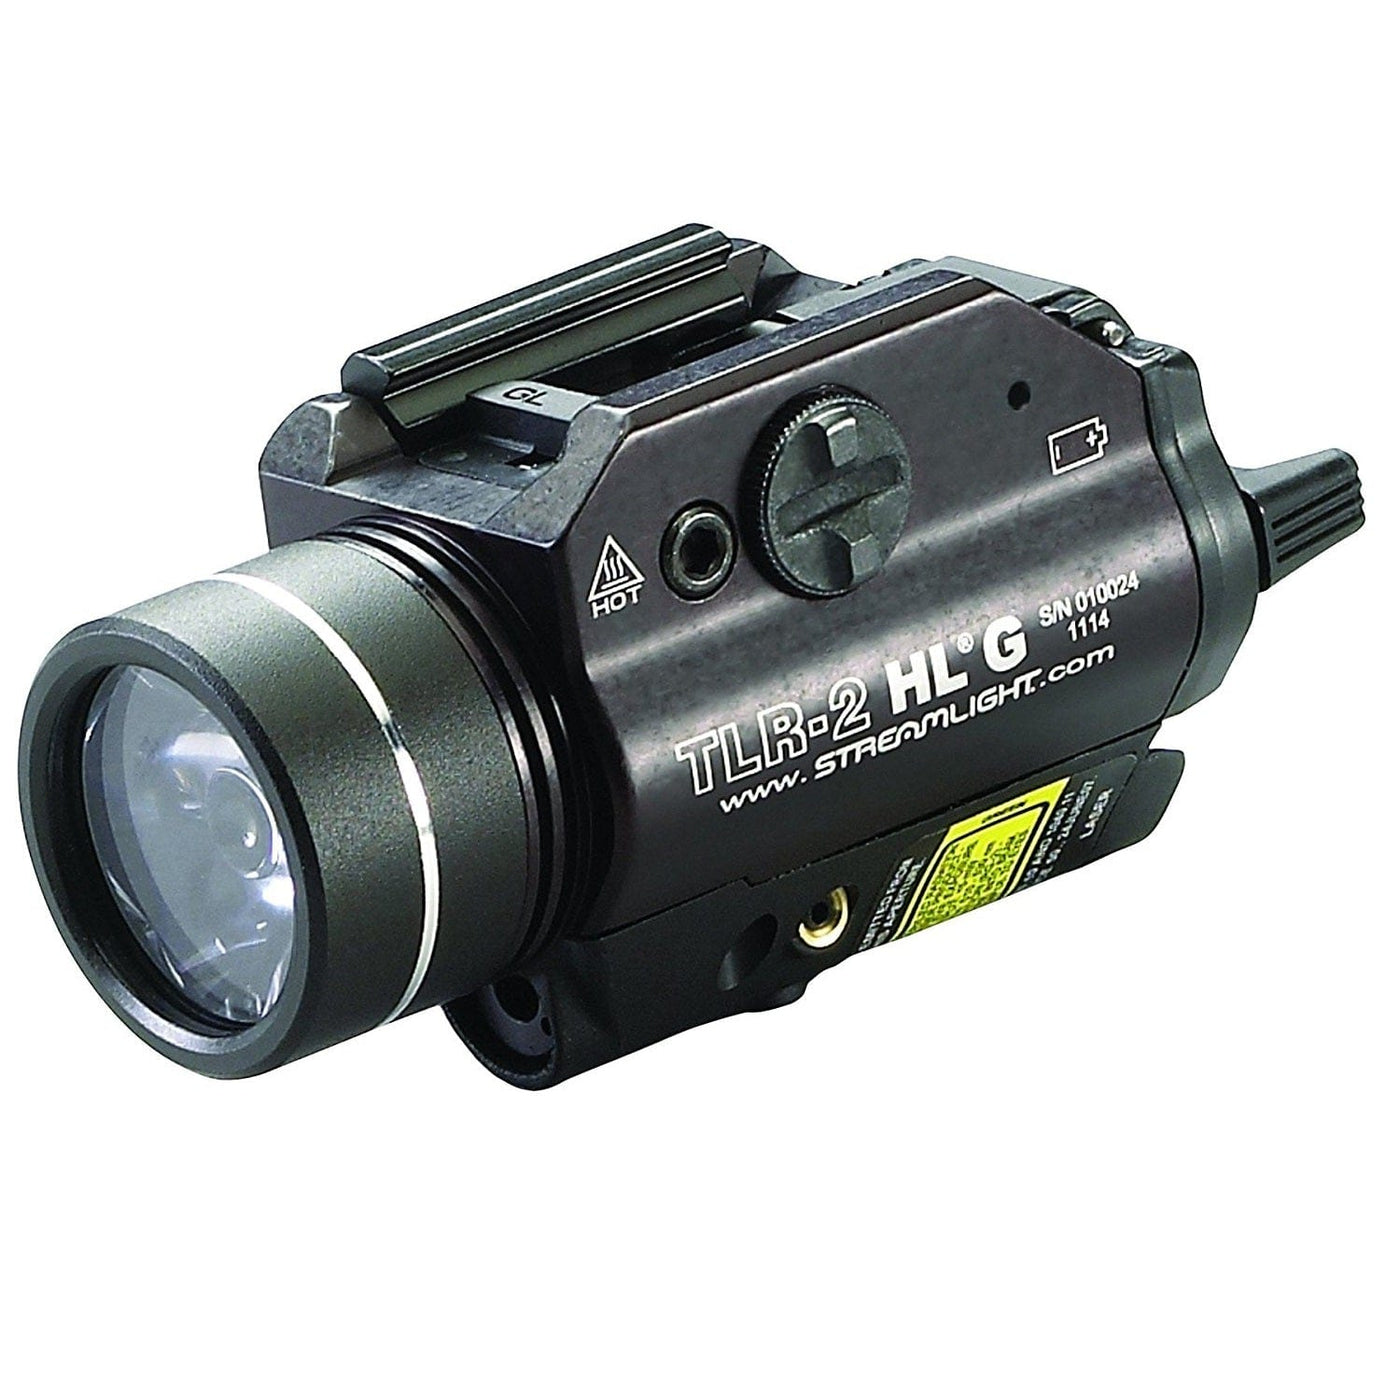 Streamlight Streamlight TLR-2HL-G Mounted Rail Flashlight w- Green Laser Lights